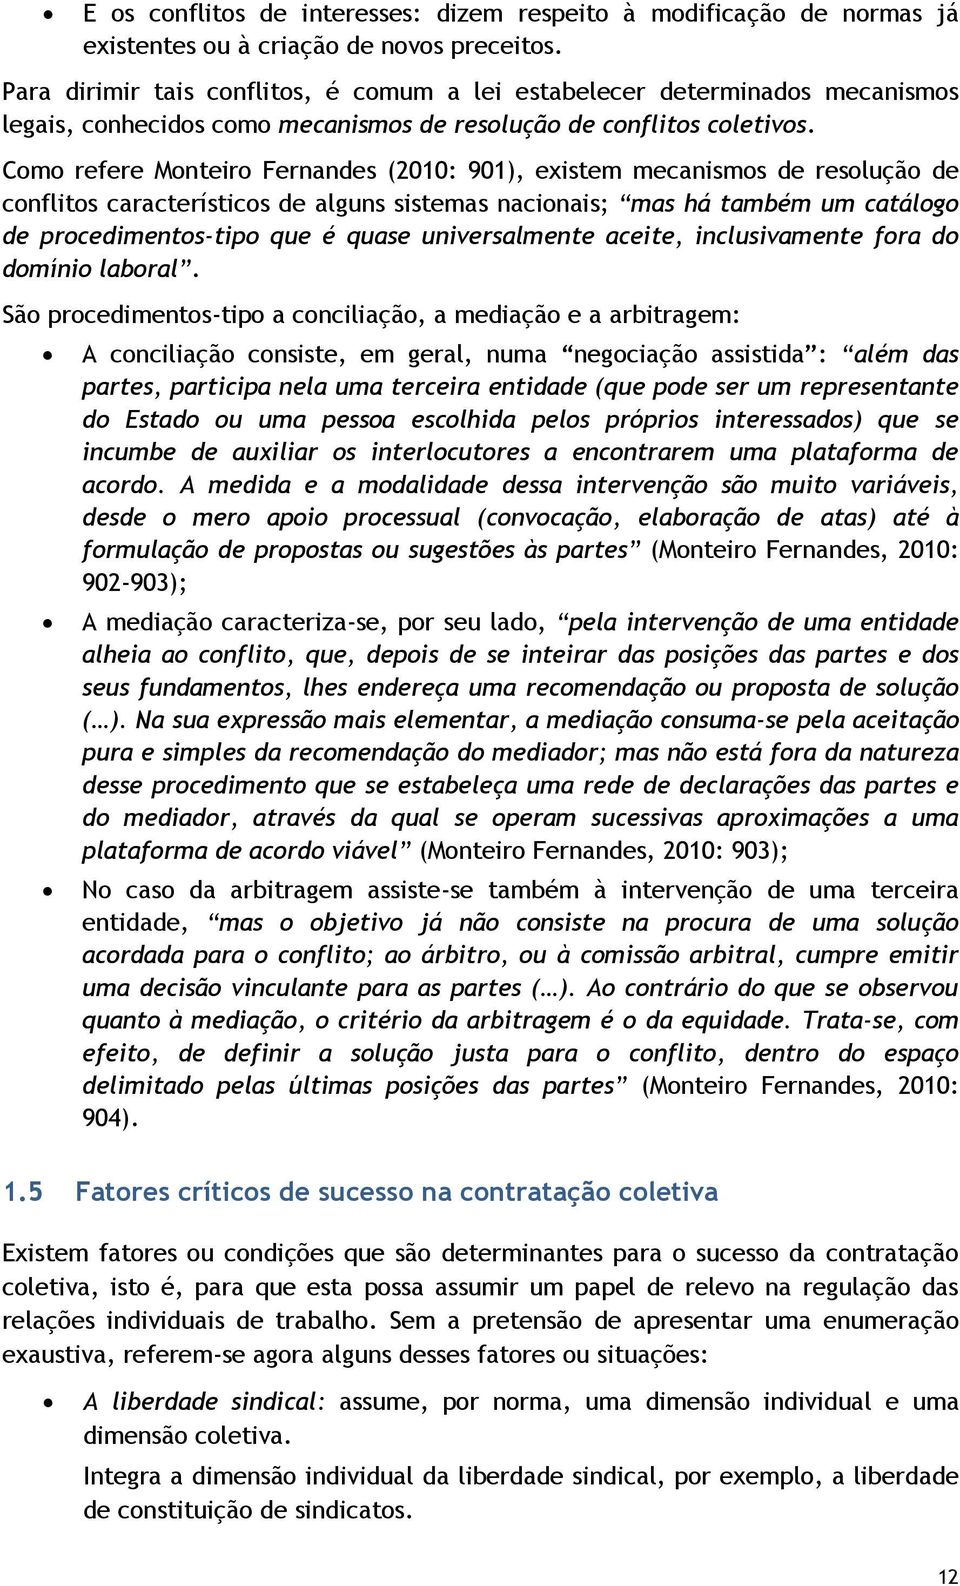 Como refere Monteiro Fernandes (2010: 901), existem mecanismos de resolução de conflitos característicos de alguns sistemas nacionais; mas há também um catálogo de procedimentos-tipo que é quase